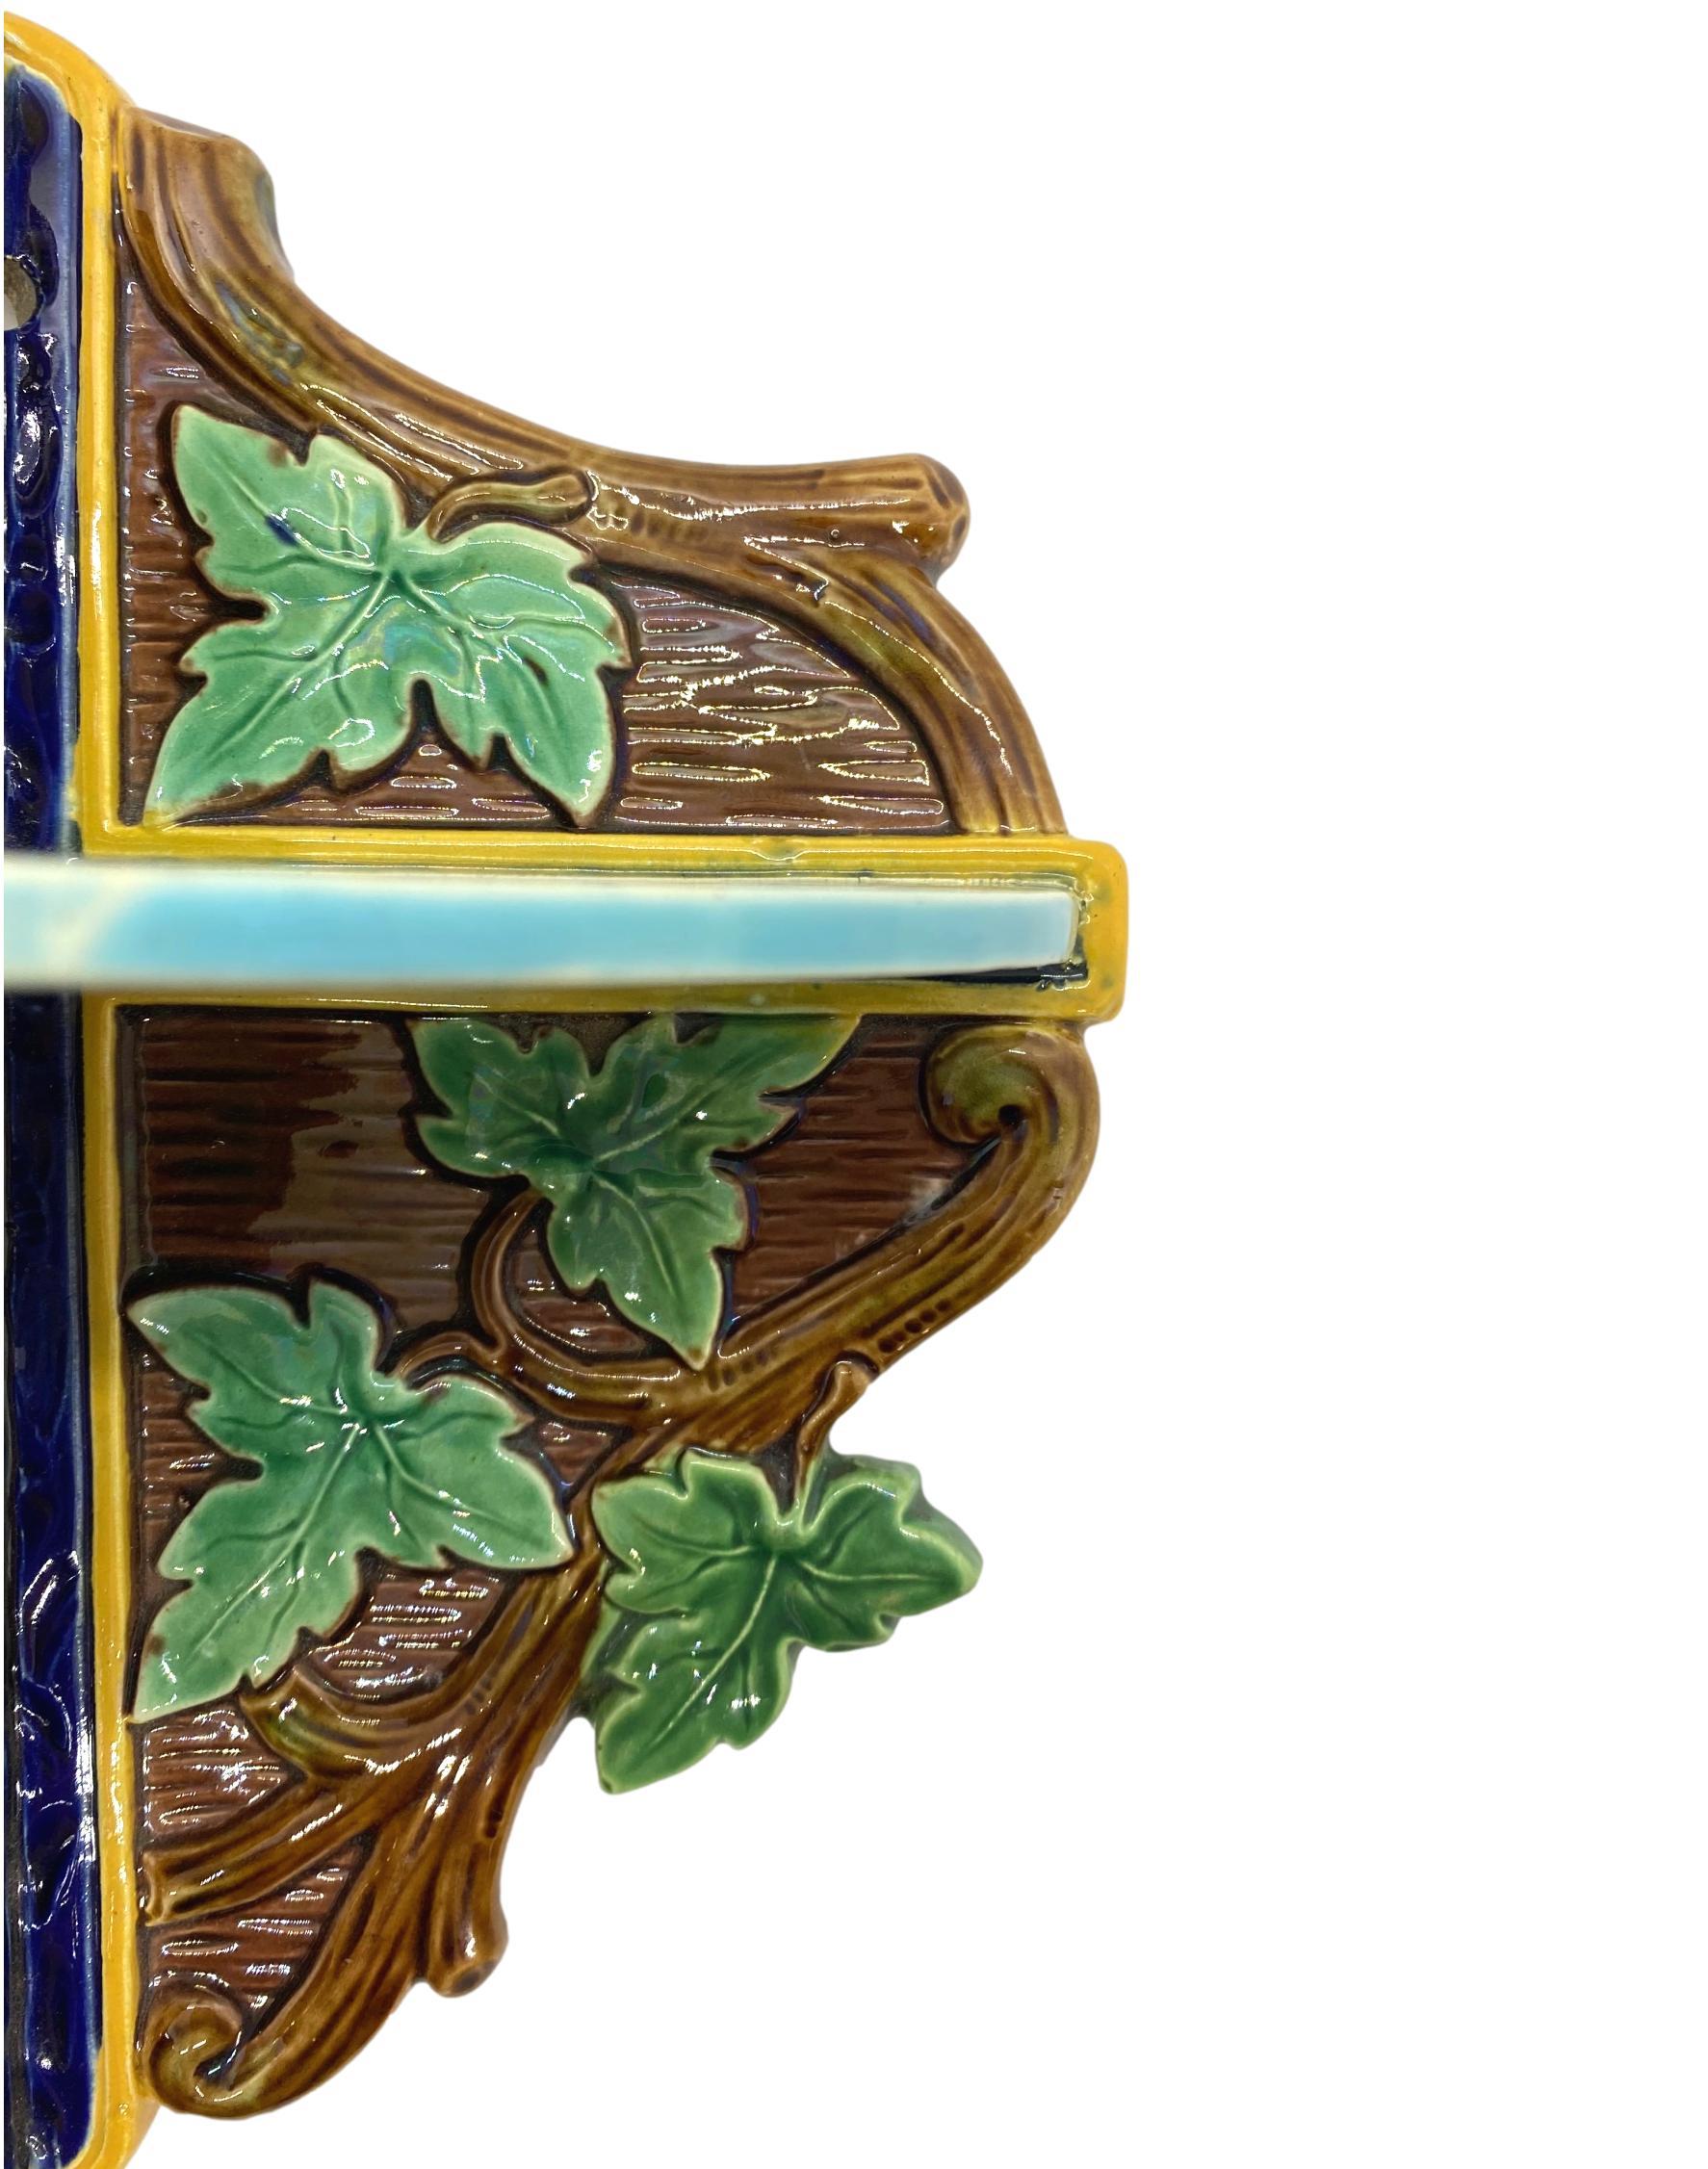 Majolika-Eckregal in kleiner Form von T.C. Brown-Westhead, Moore & Co. Naturalistisch geformte, grün glasierte Efeublätter, modellierte Zweige auf Rindengrund, mittig mit einem türkis glasierten Regalboden versehen, englisch, um 1877. 
Seit dreißig